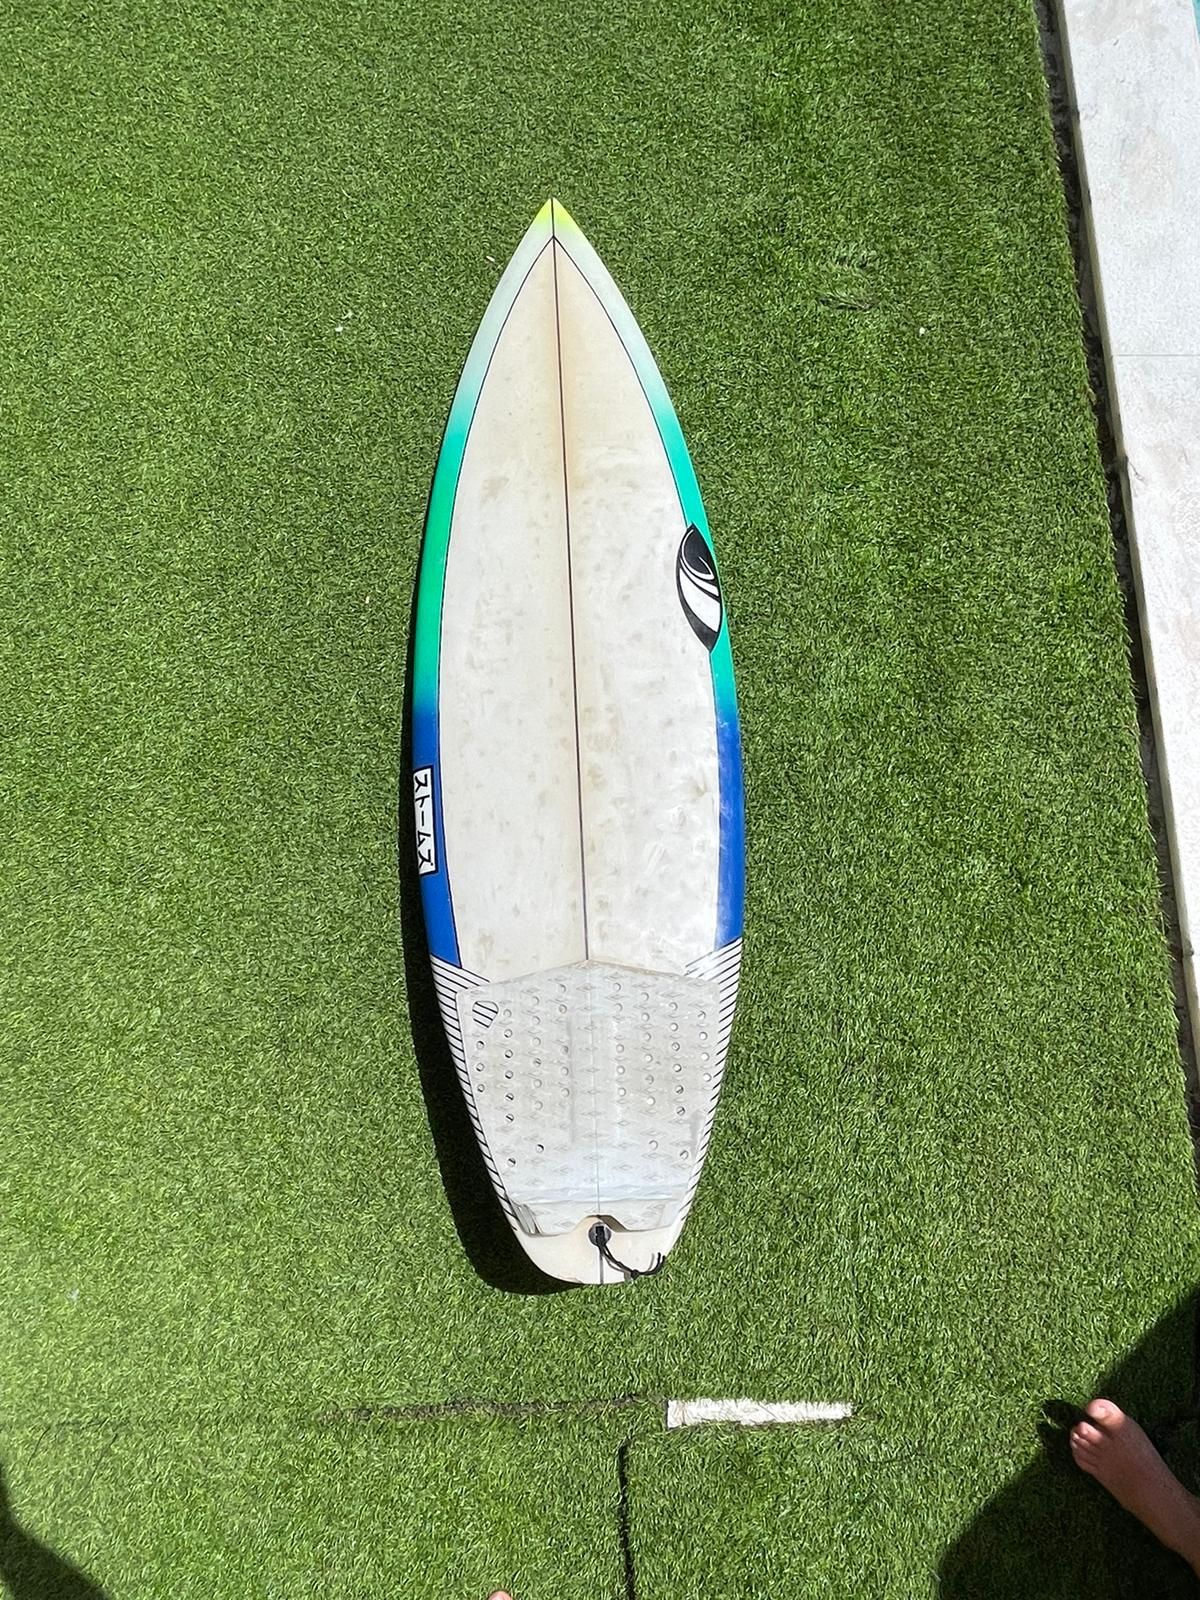 Prancha de surf sharpeye com 3 quilhas,  21 litros e uma 5.2